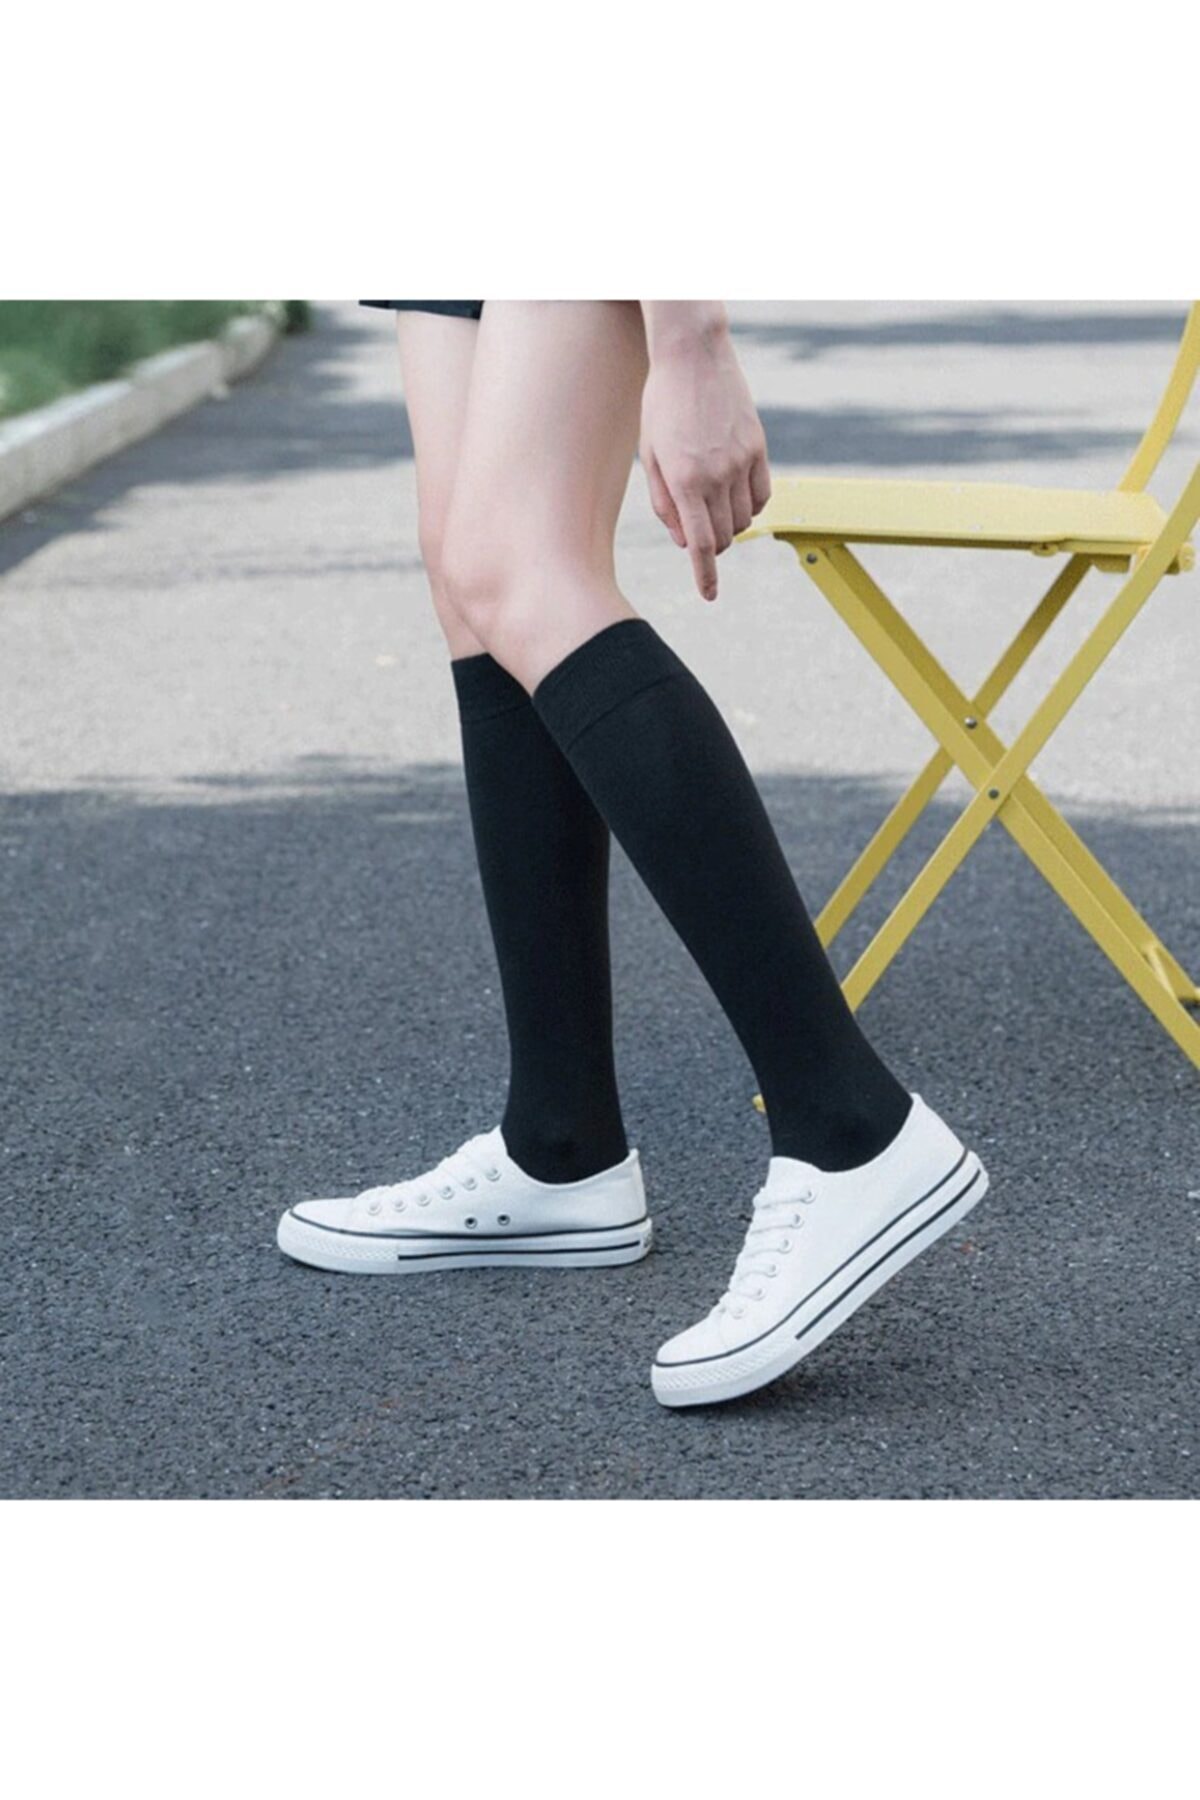 çorapmanya Kadın Siyah Diz Altı Bambu Dikişsiz Çorap 4 Çift